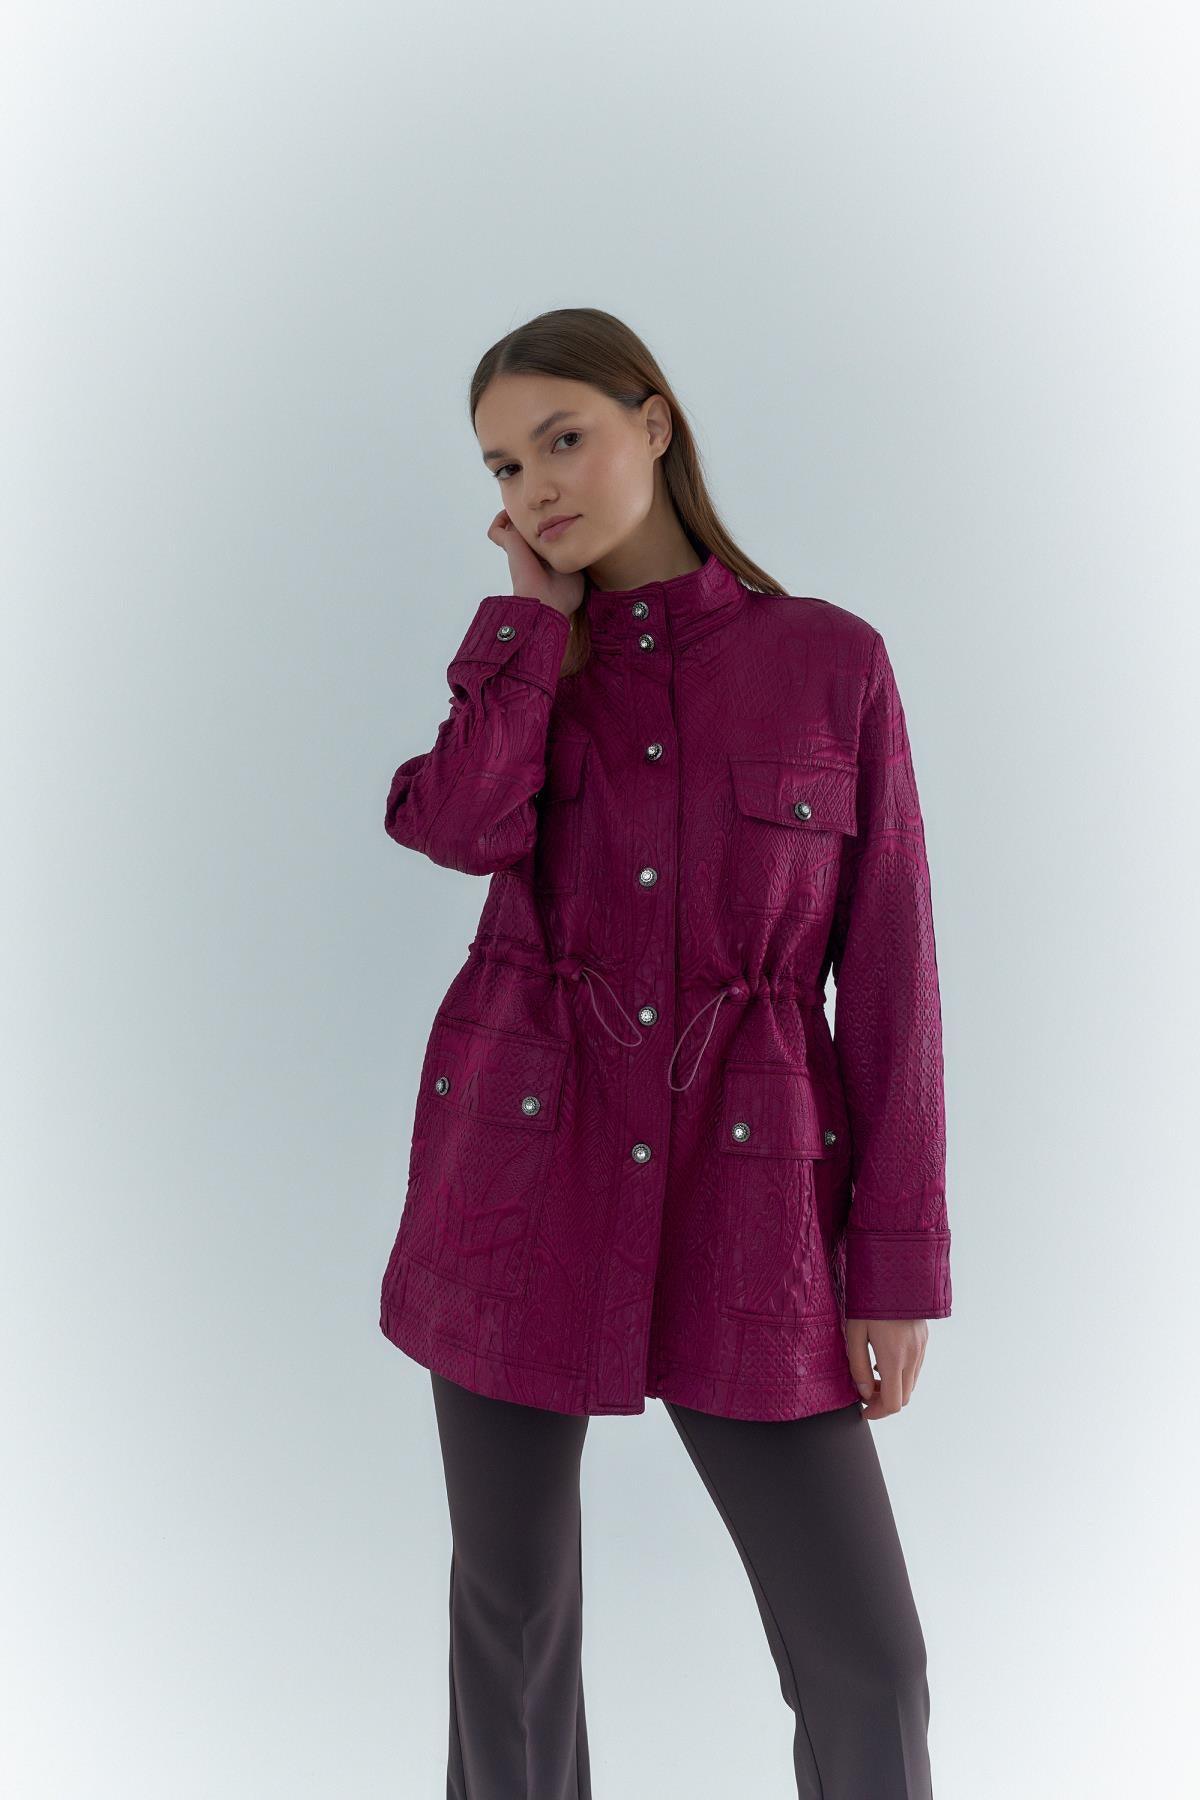 Jakarlı Kadın Ceket - Eser Giyim